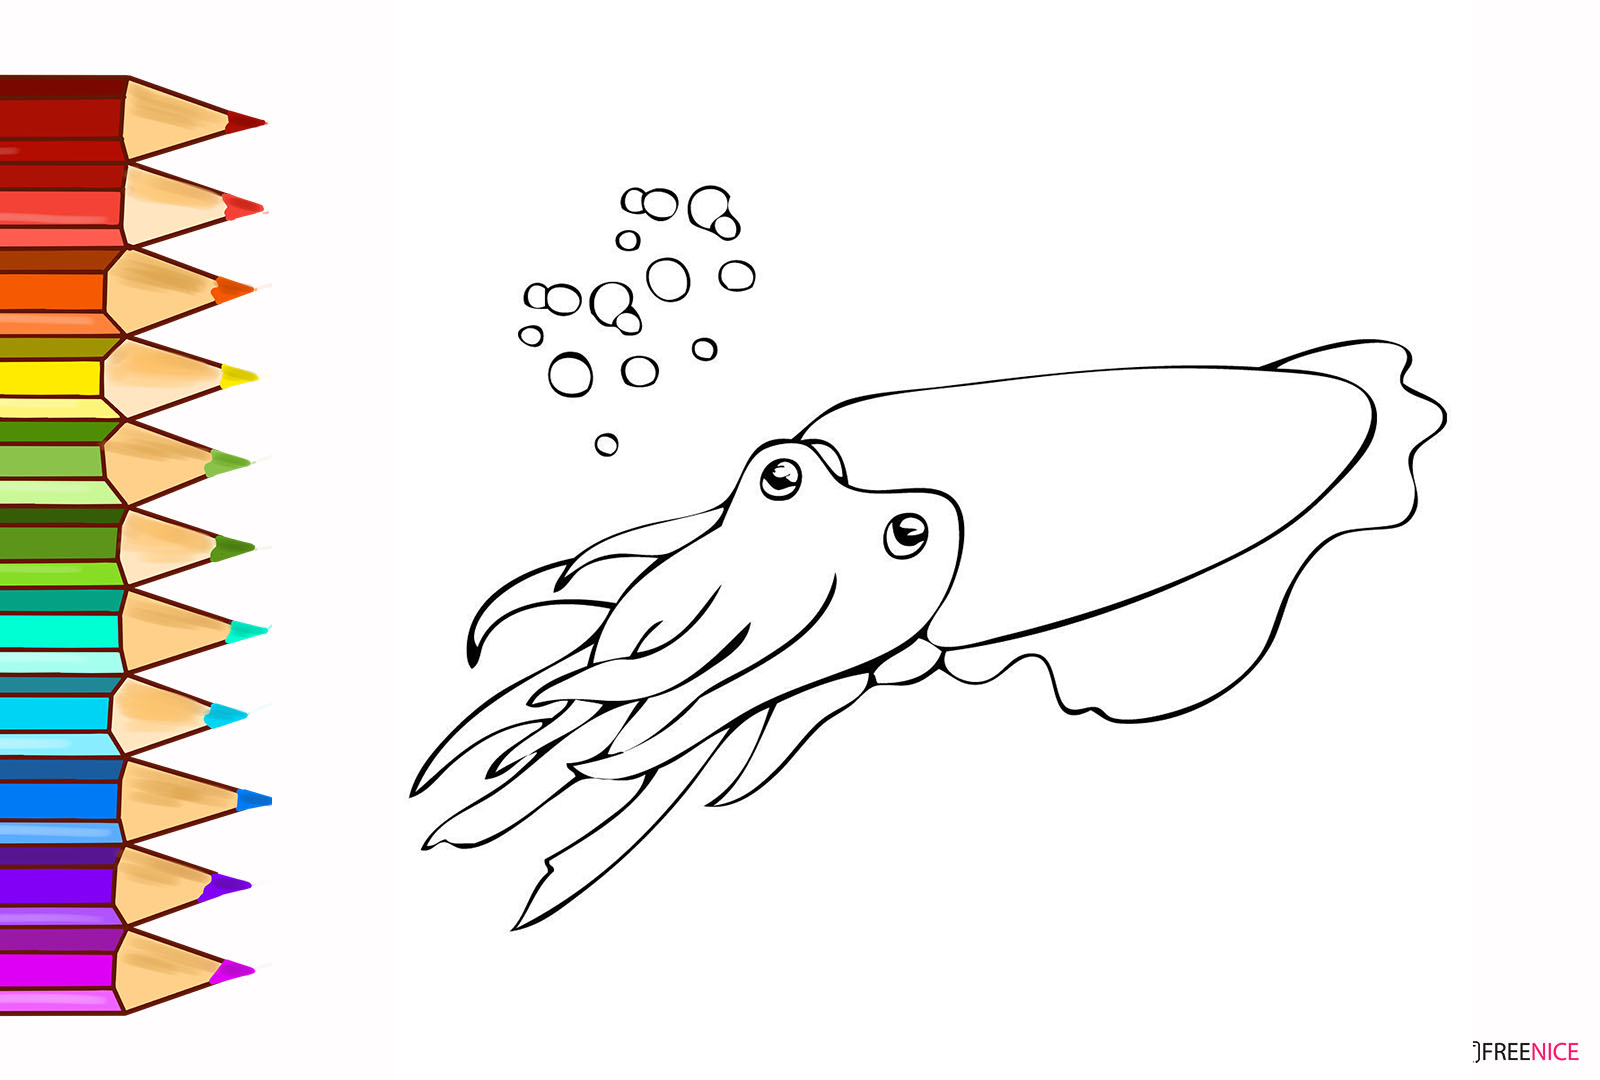 Xem hơn 100 ảnh về hình vẽ sinh vật biển  daotaonec